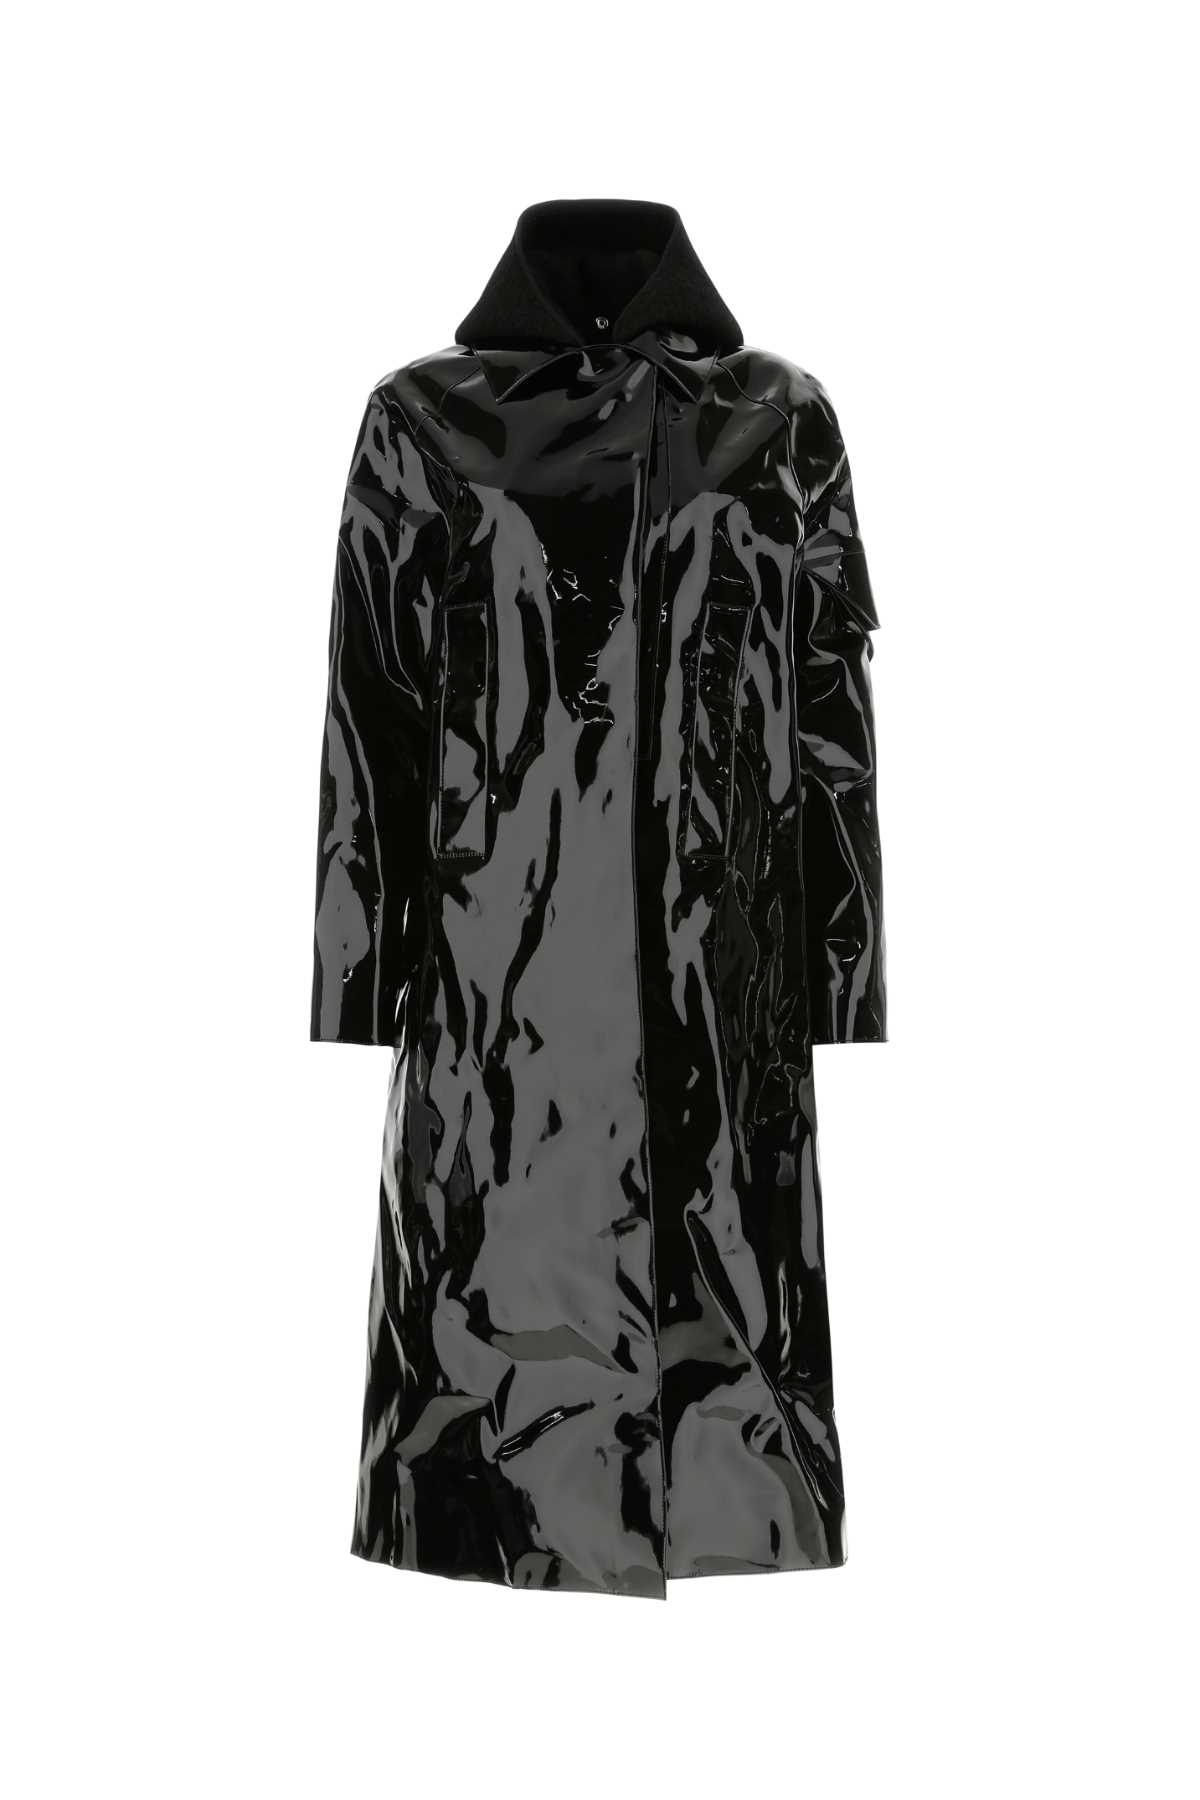 Black Fabric Paint Rain Coat